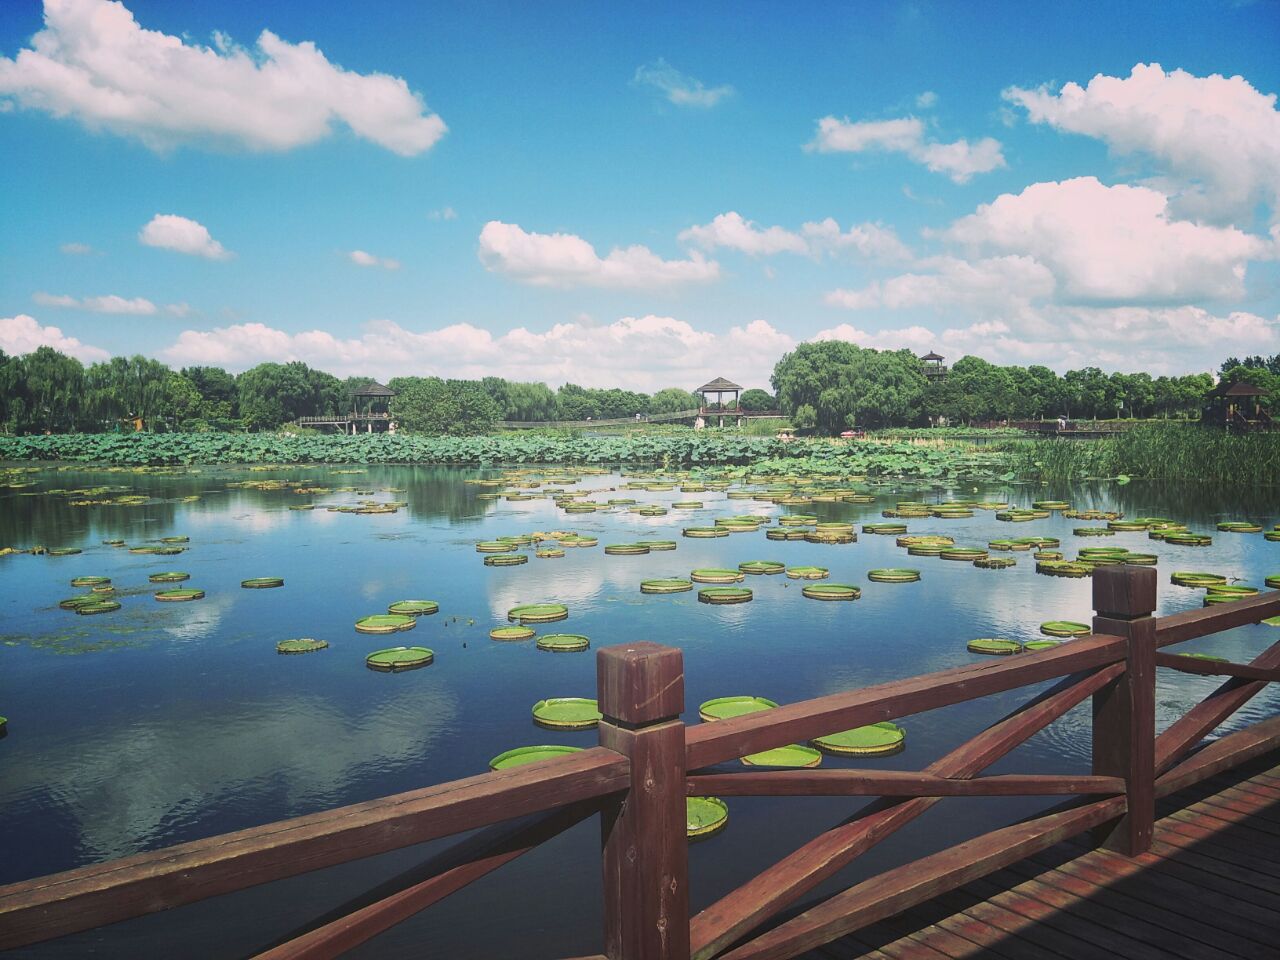 【携程攻略】苏州荷塘月色湿地公园好玩吗,苏州荷塘月色湿地公园景点